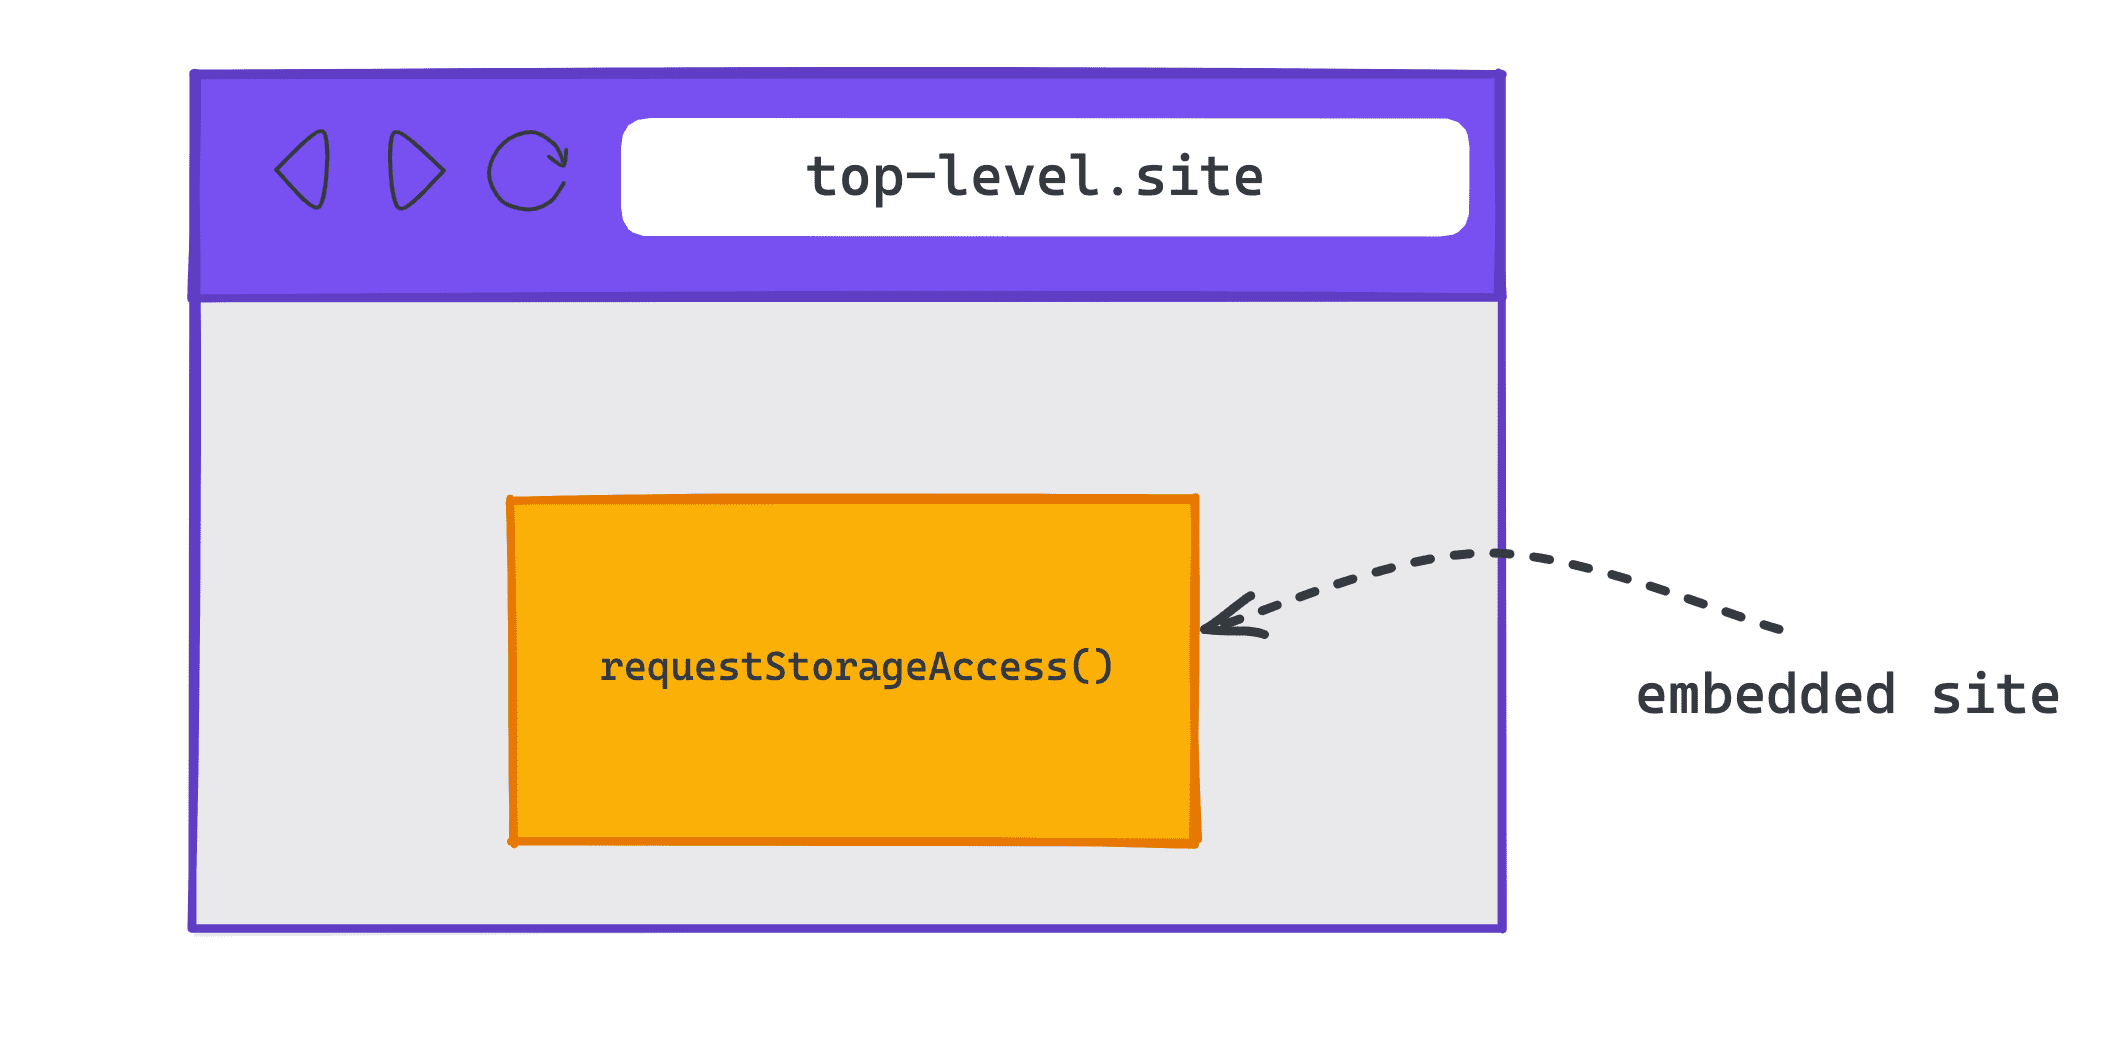 Bir üst-level.site adresindeki yerleştirilmiş bir siteyi gösteren şema